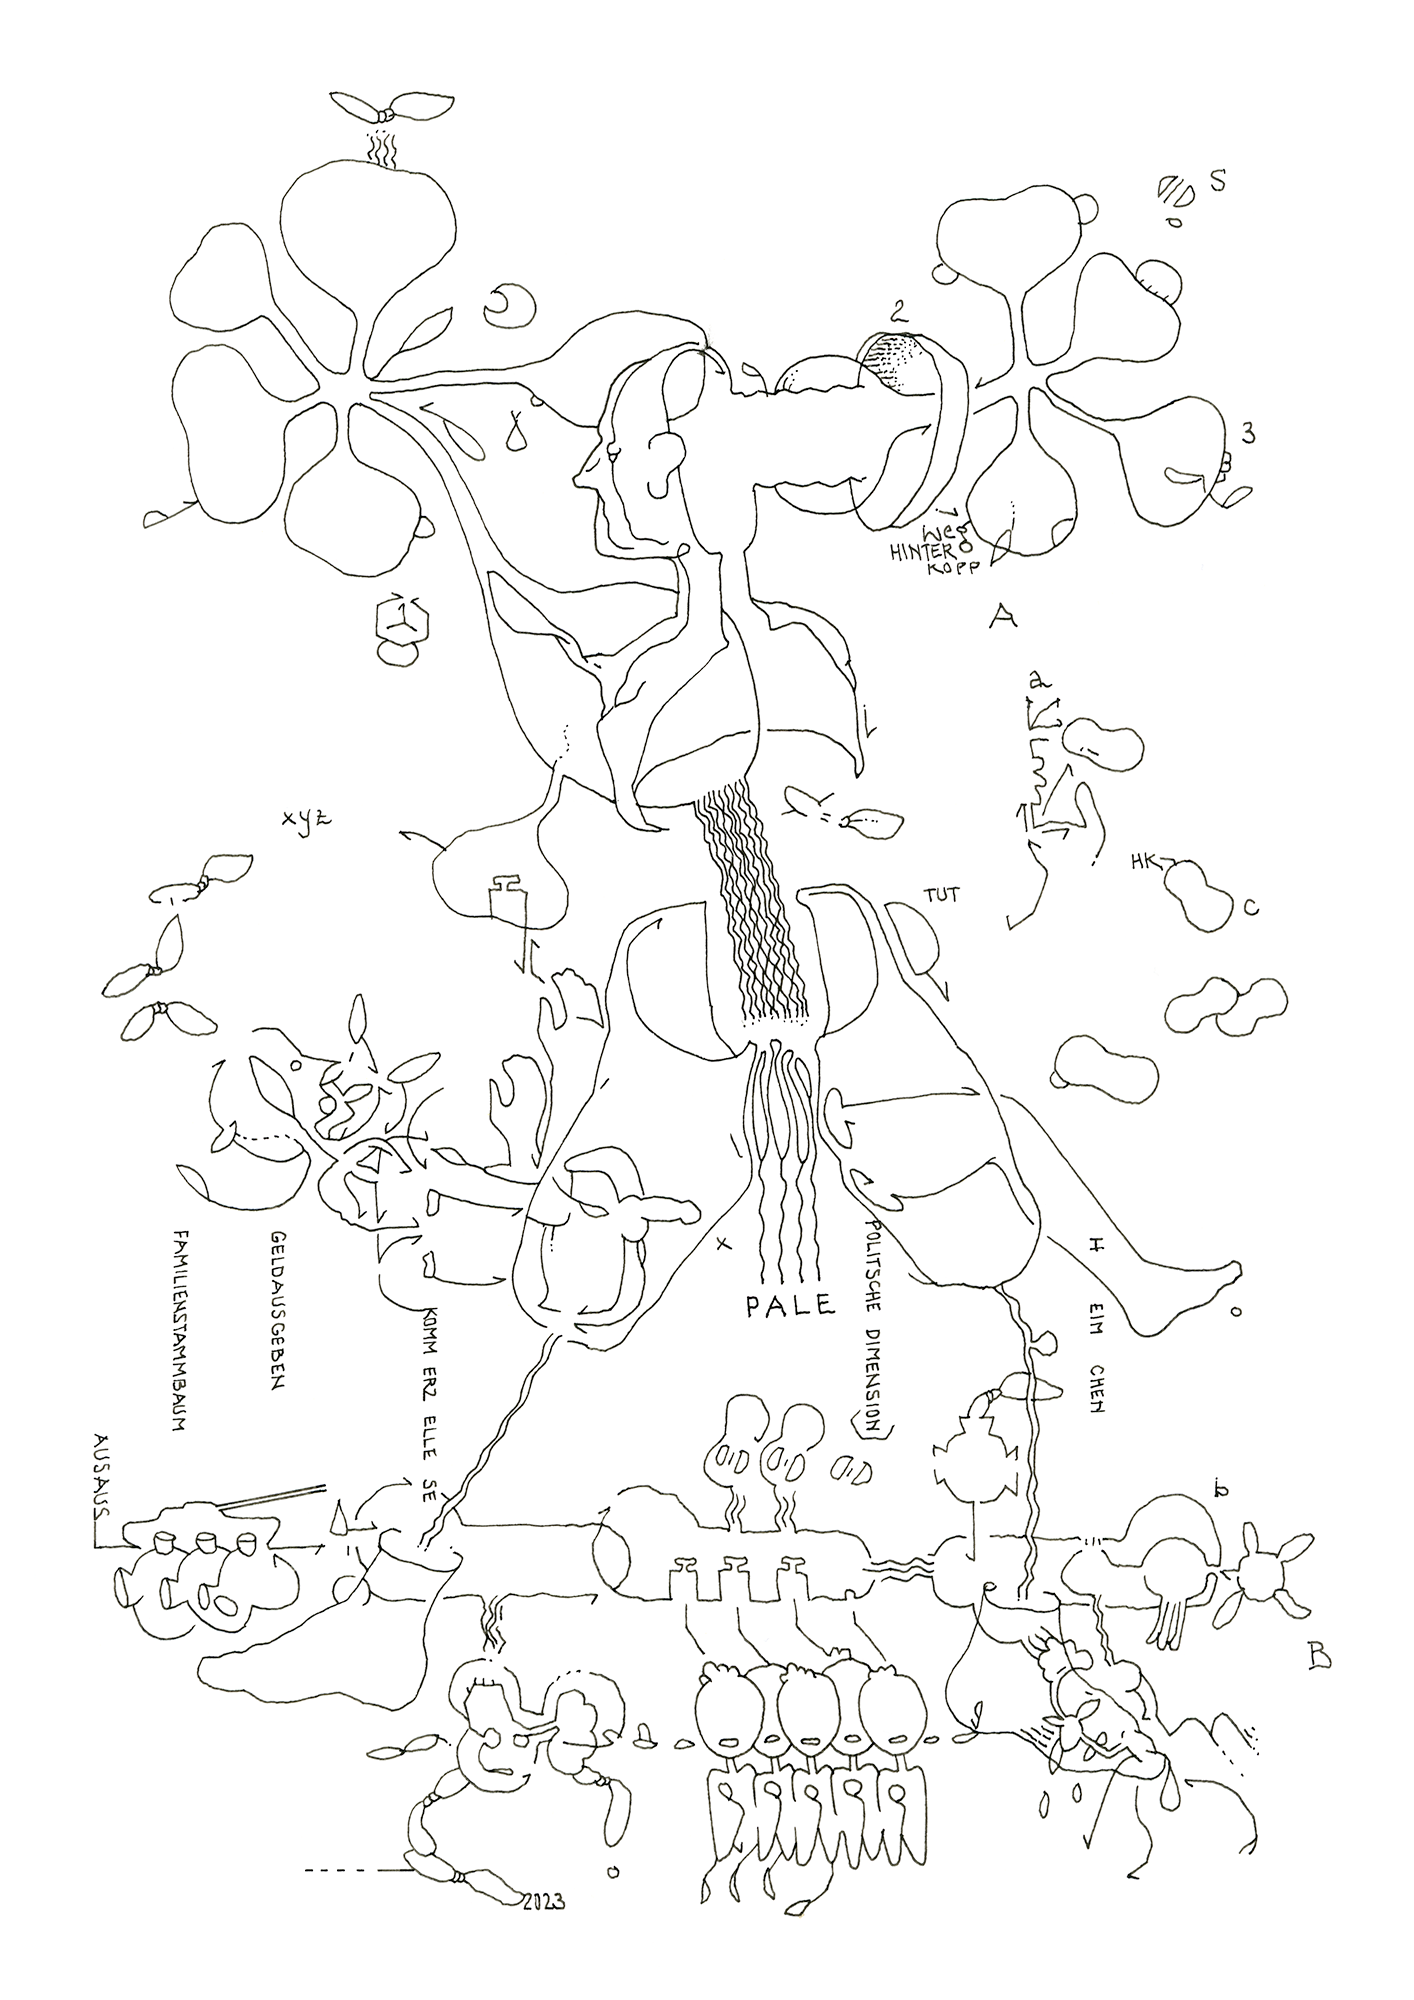 Hannes Kater: Tageszeichnung (Zeichnung/drawing) vom 24.04.2023 (1414 x 2000 Pixel)